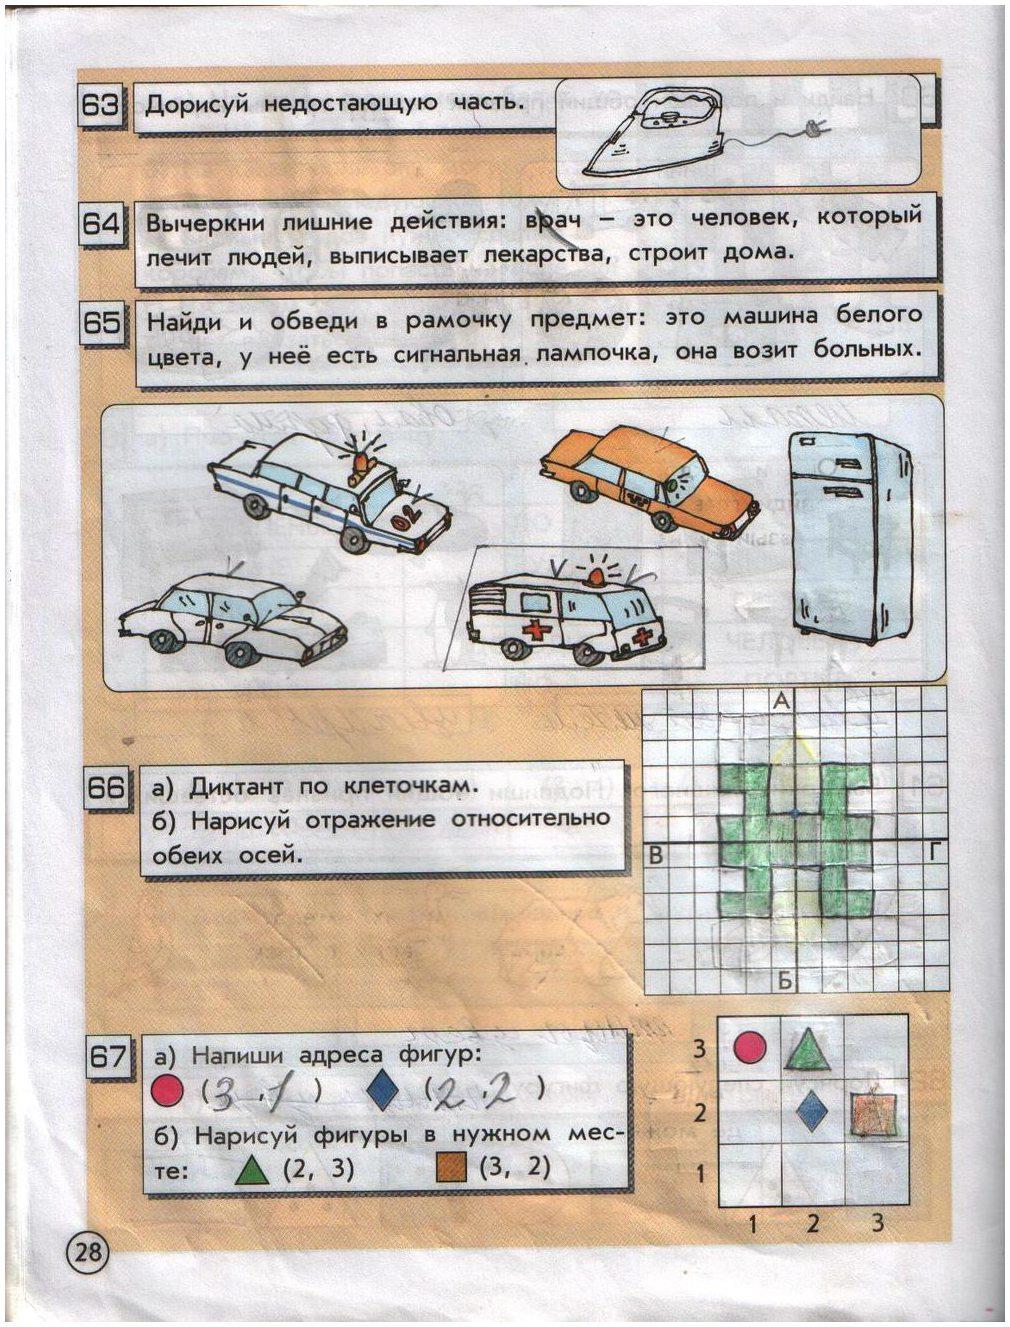 гдз 2 класс информатика часть 1 Горячев, Горина страница 28